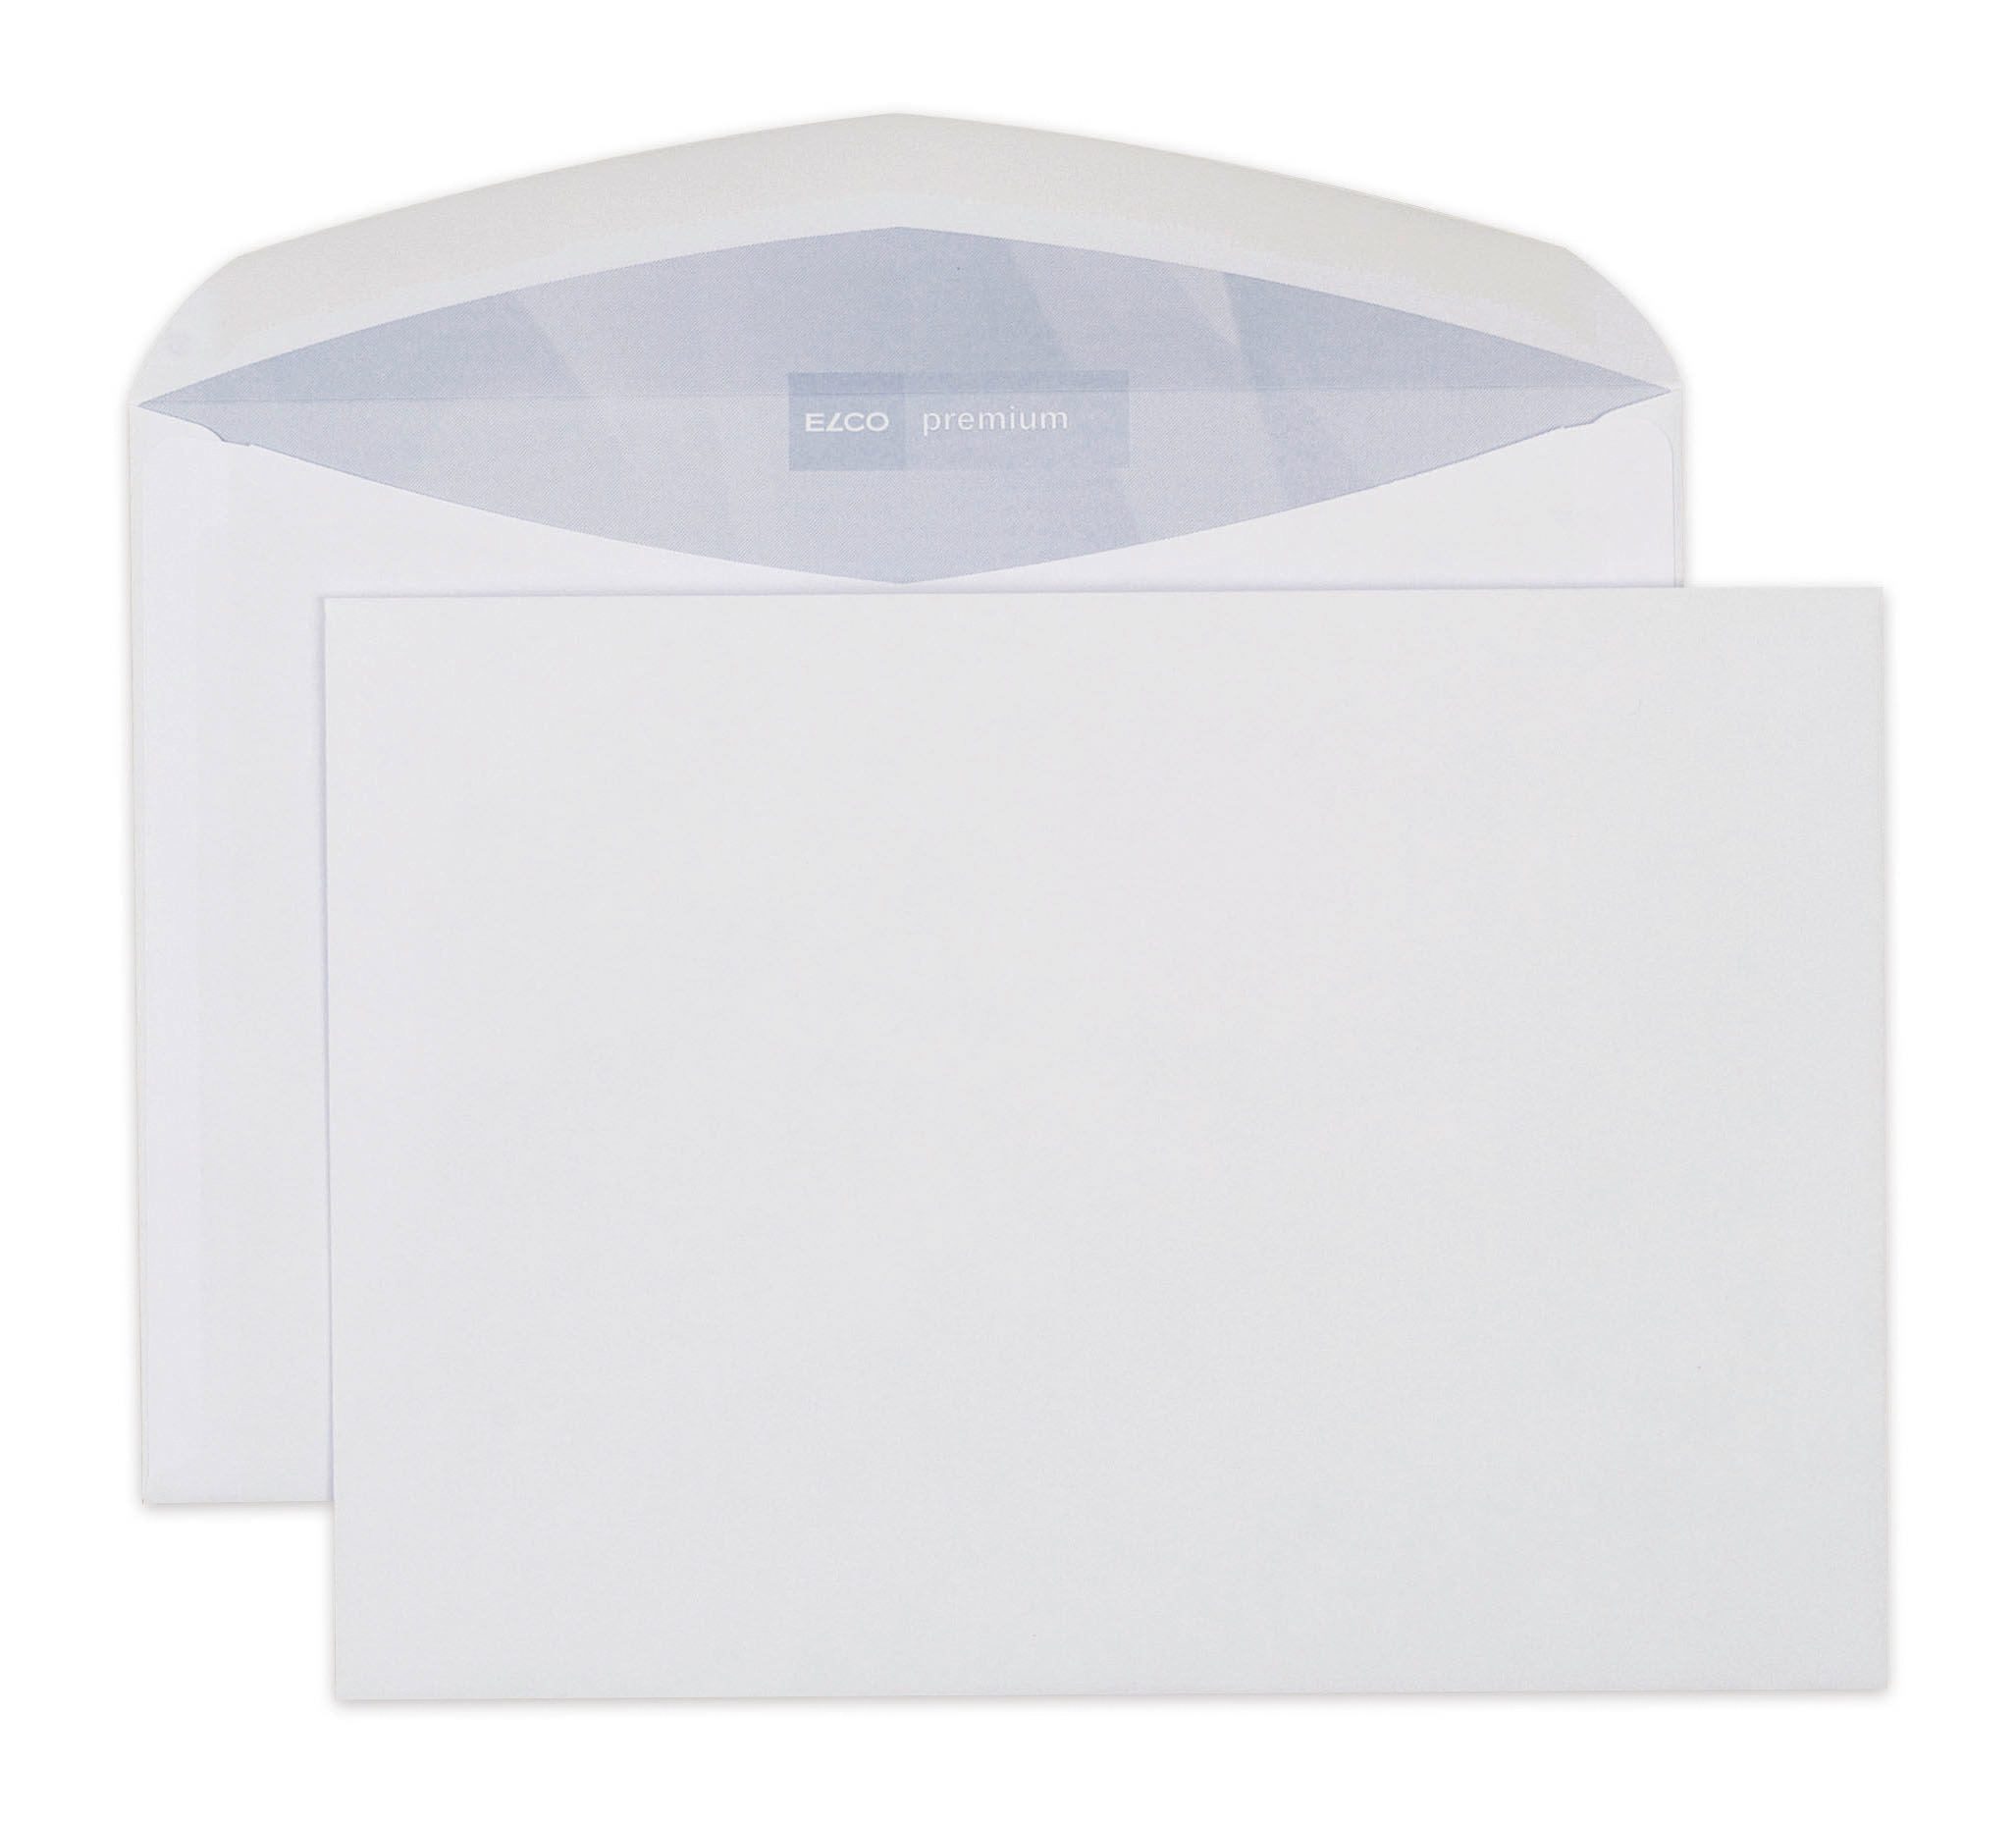 ELCO Enveloppe Premium s/fenêtre C5 32486 100g, blanc 500 pcs.